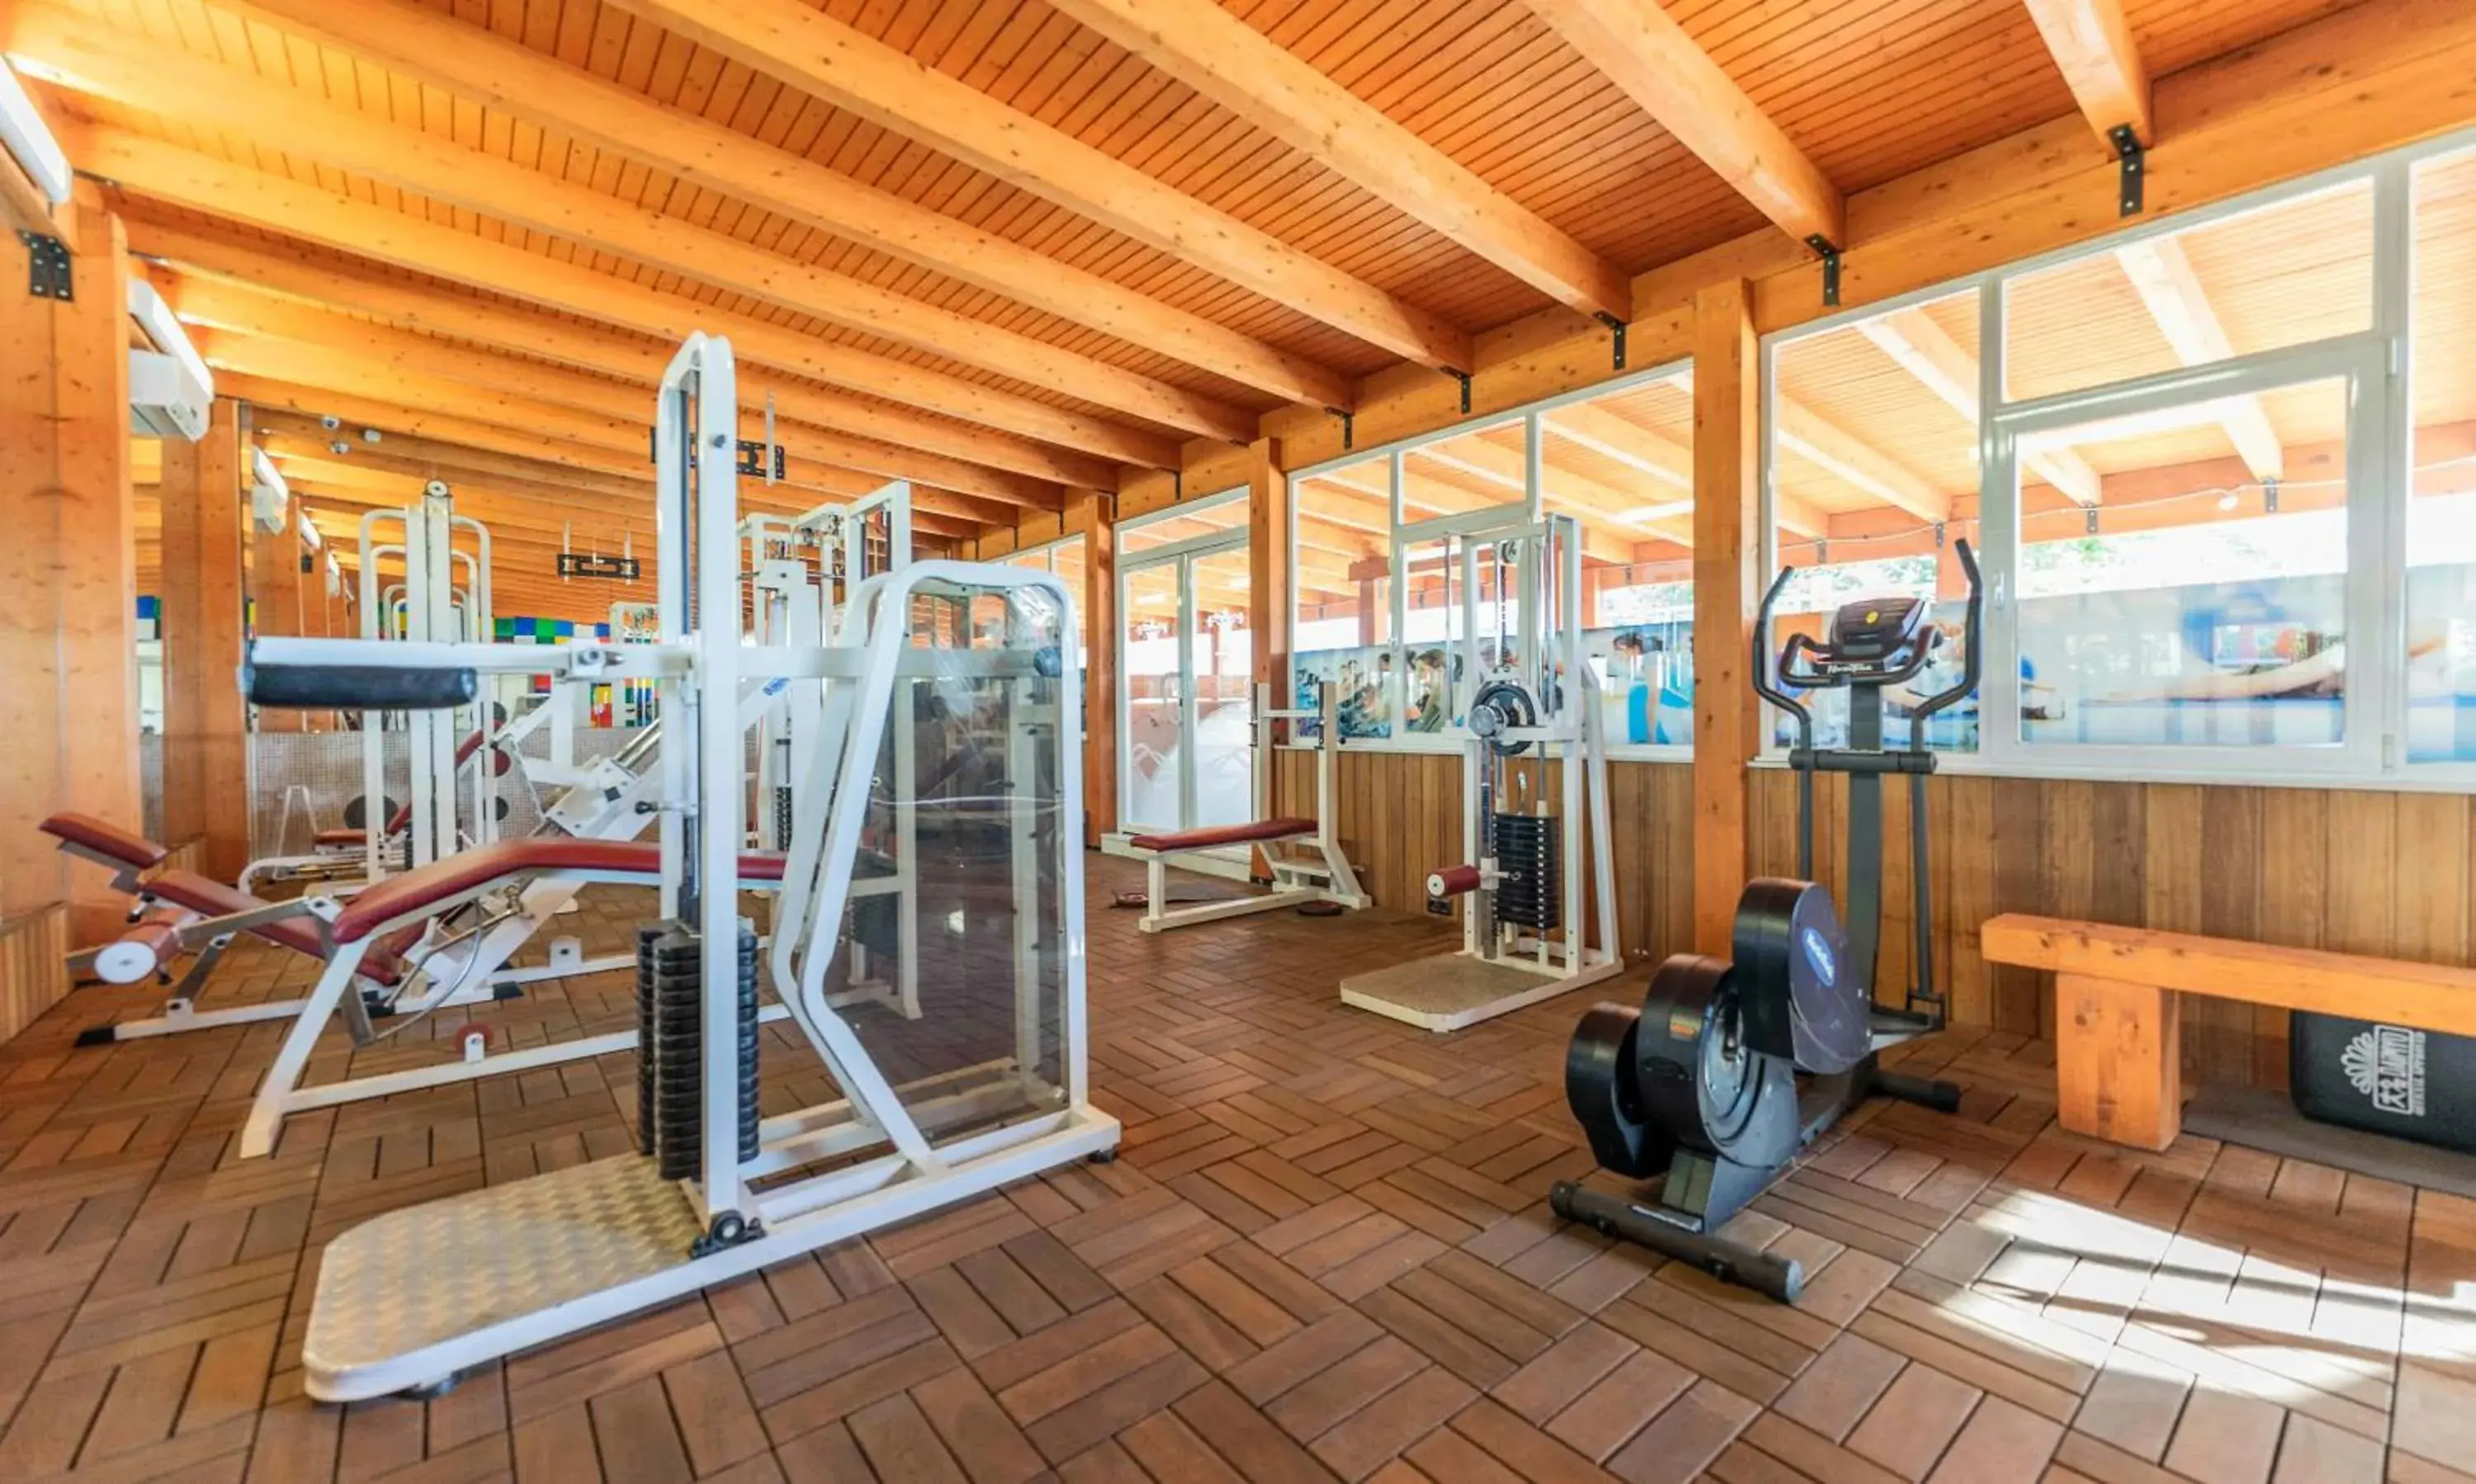 Fitness centre/facilities, Fitness Center/Facilities in Checkin Camino de Granada